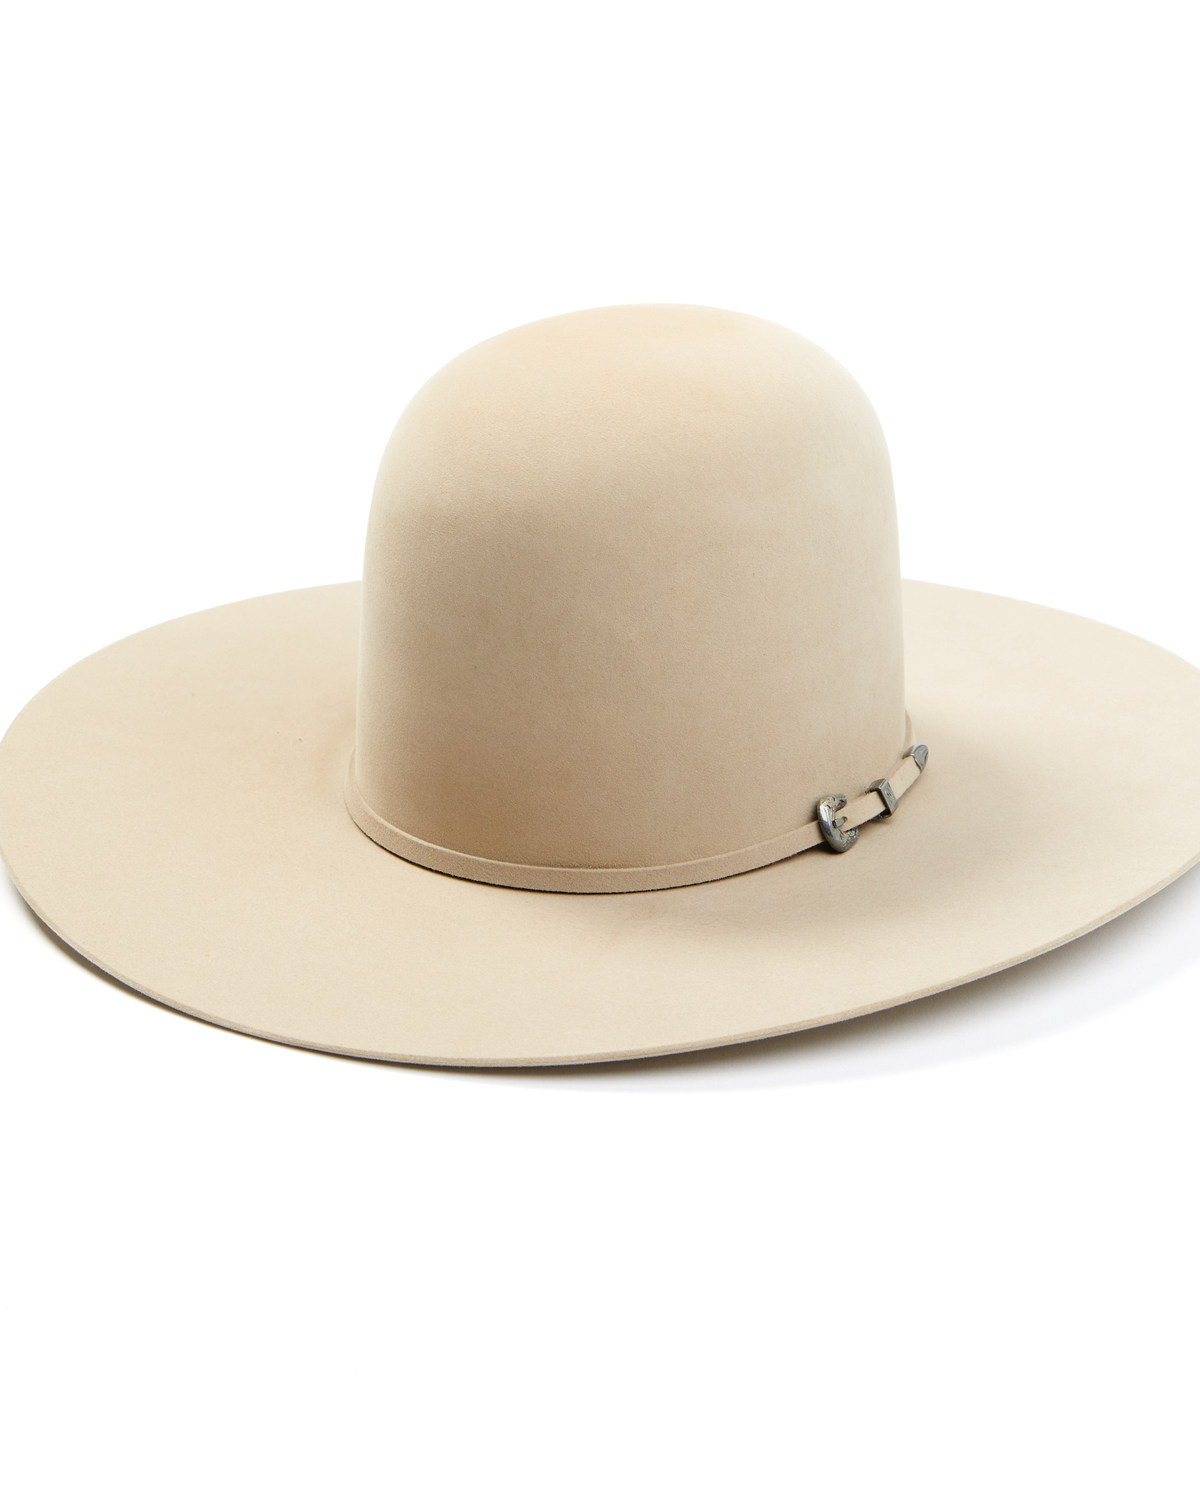 Atwood Sahara 100X Felt Cowboy Hat